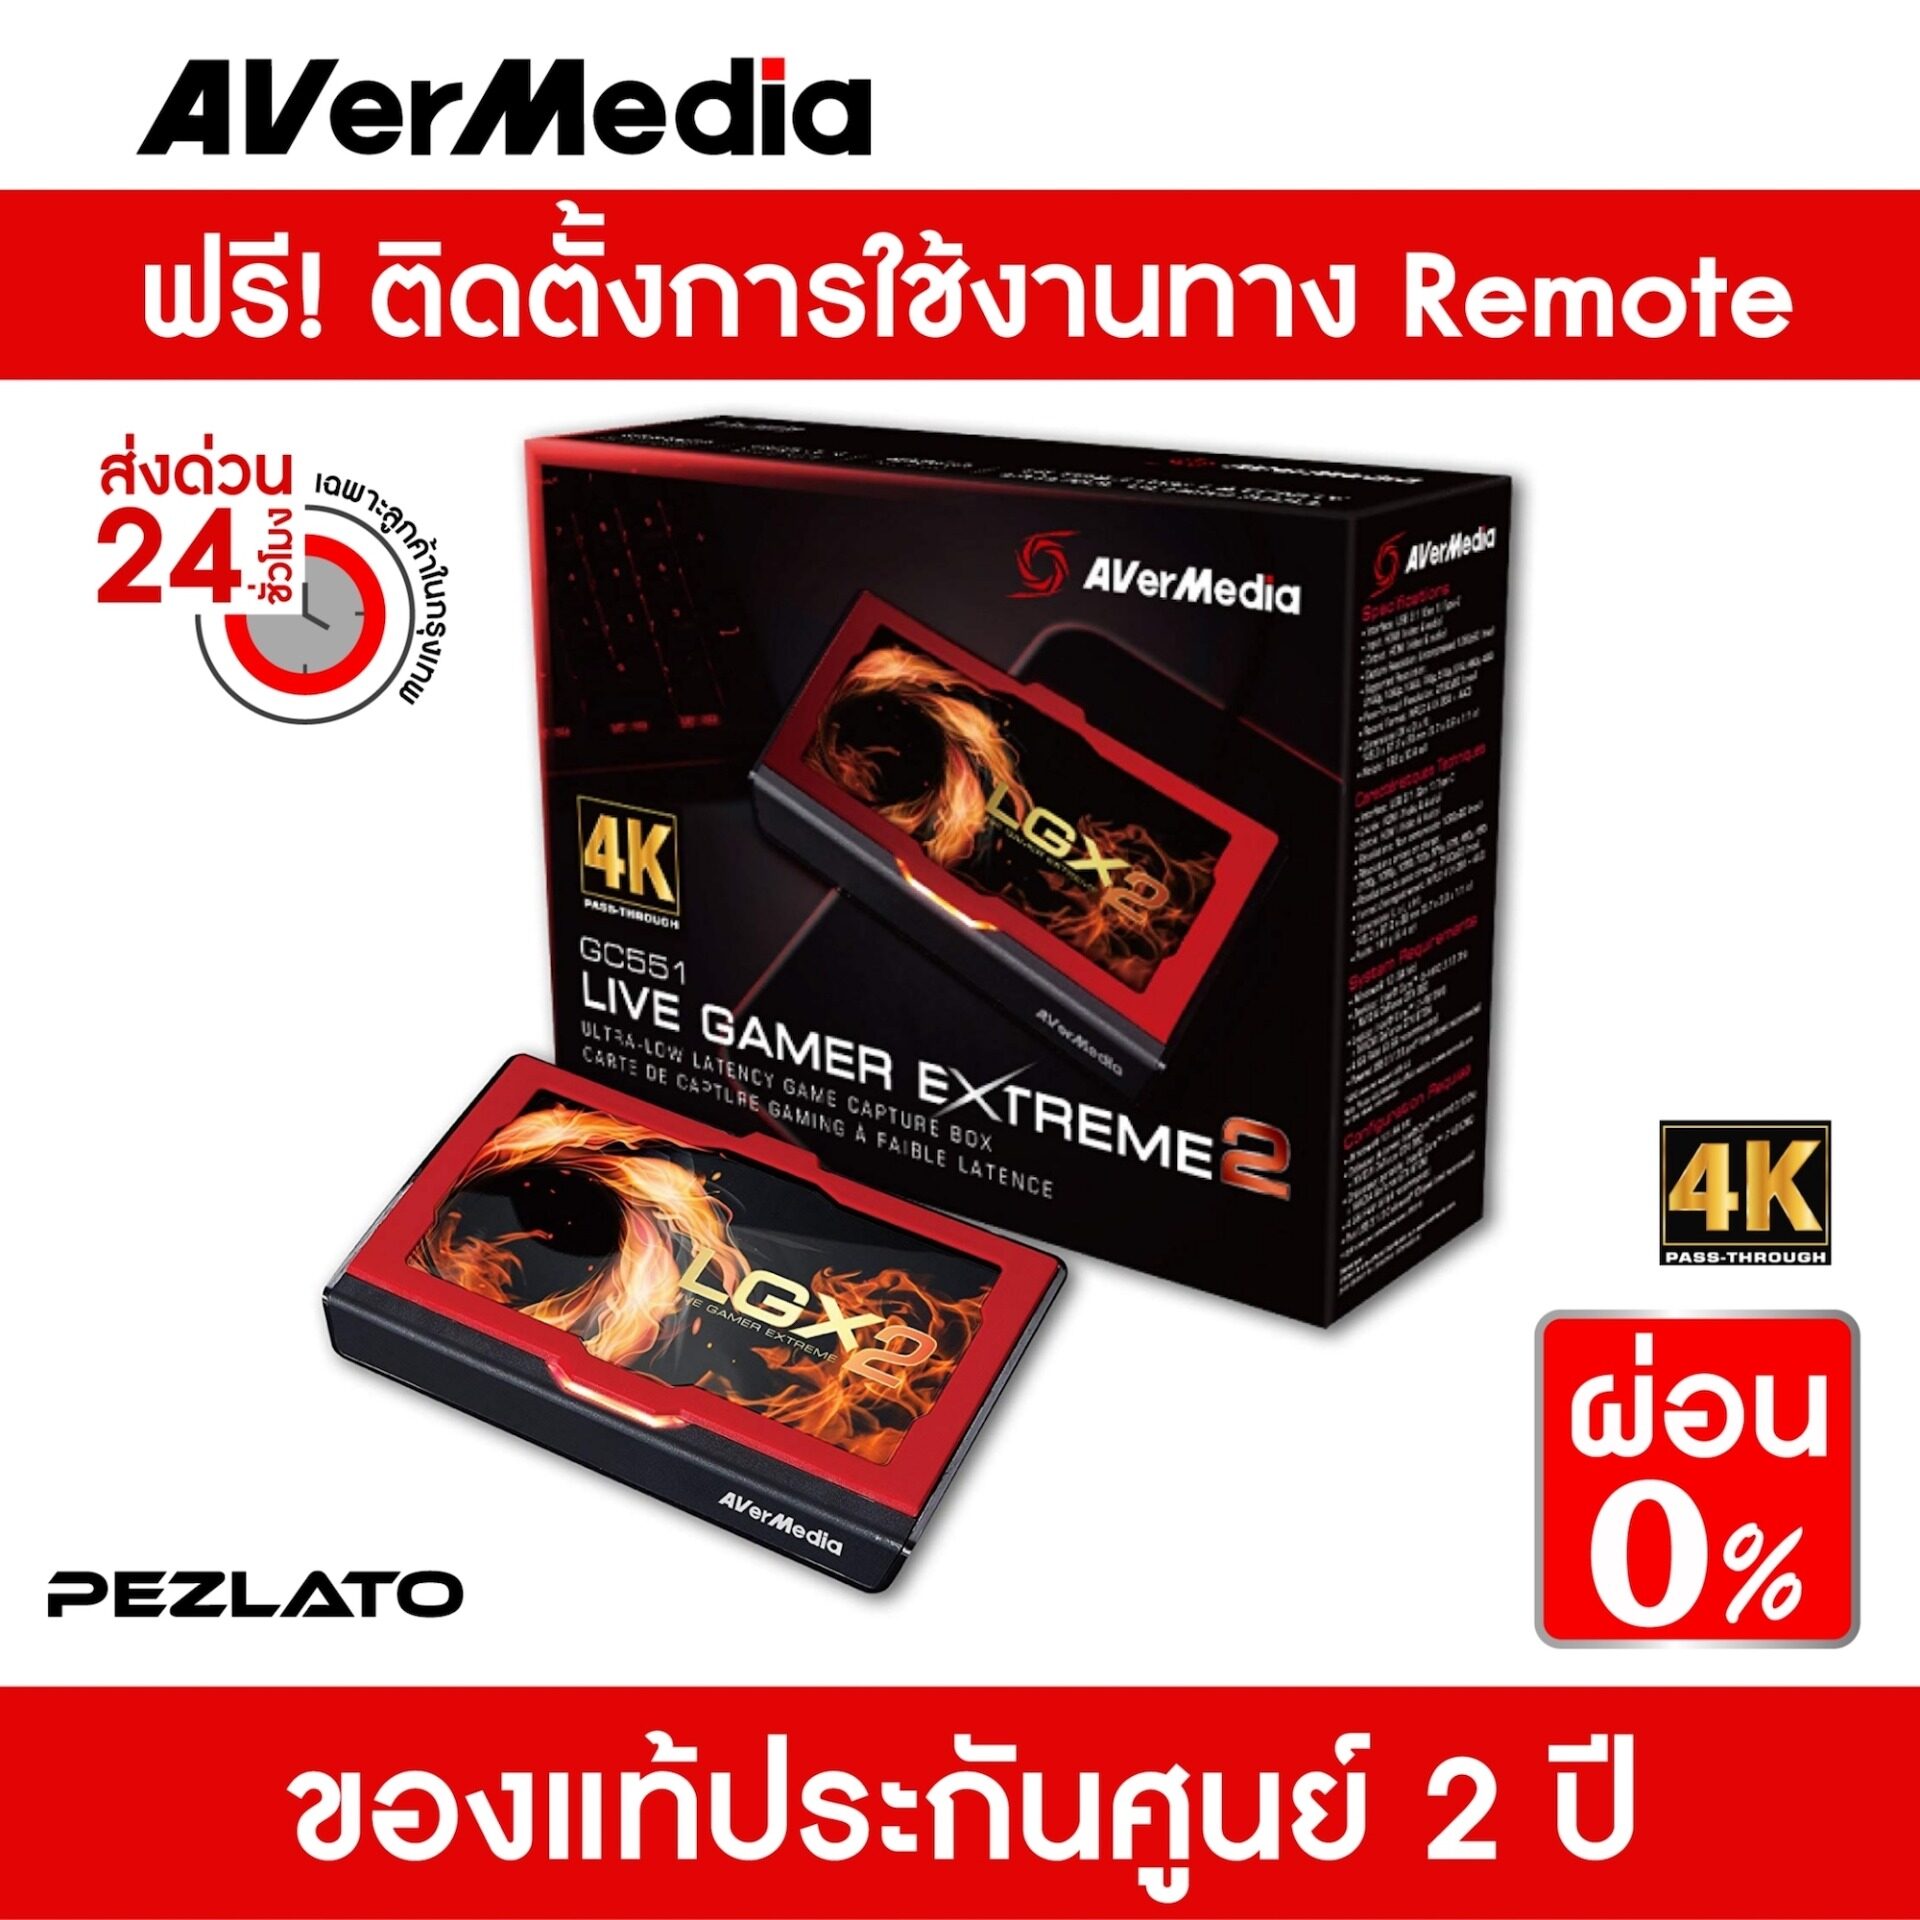 ด่วน! ถูกที่สุดจำนวนจำกัด AVerMedia Live Gamer EXTREME 2 External Capture Card (GC551)